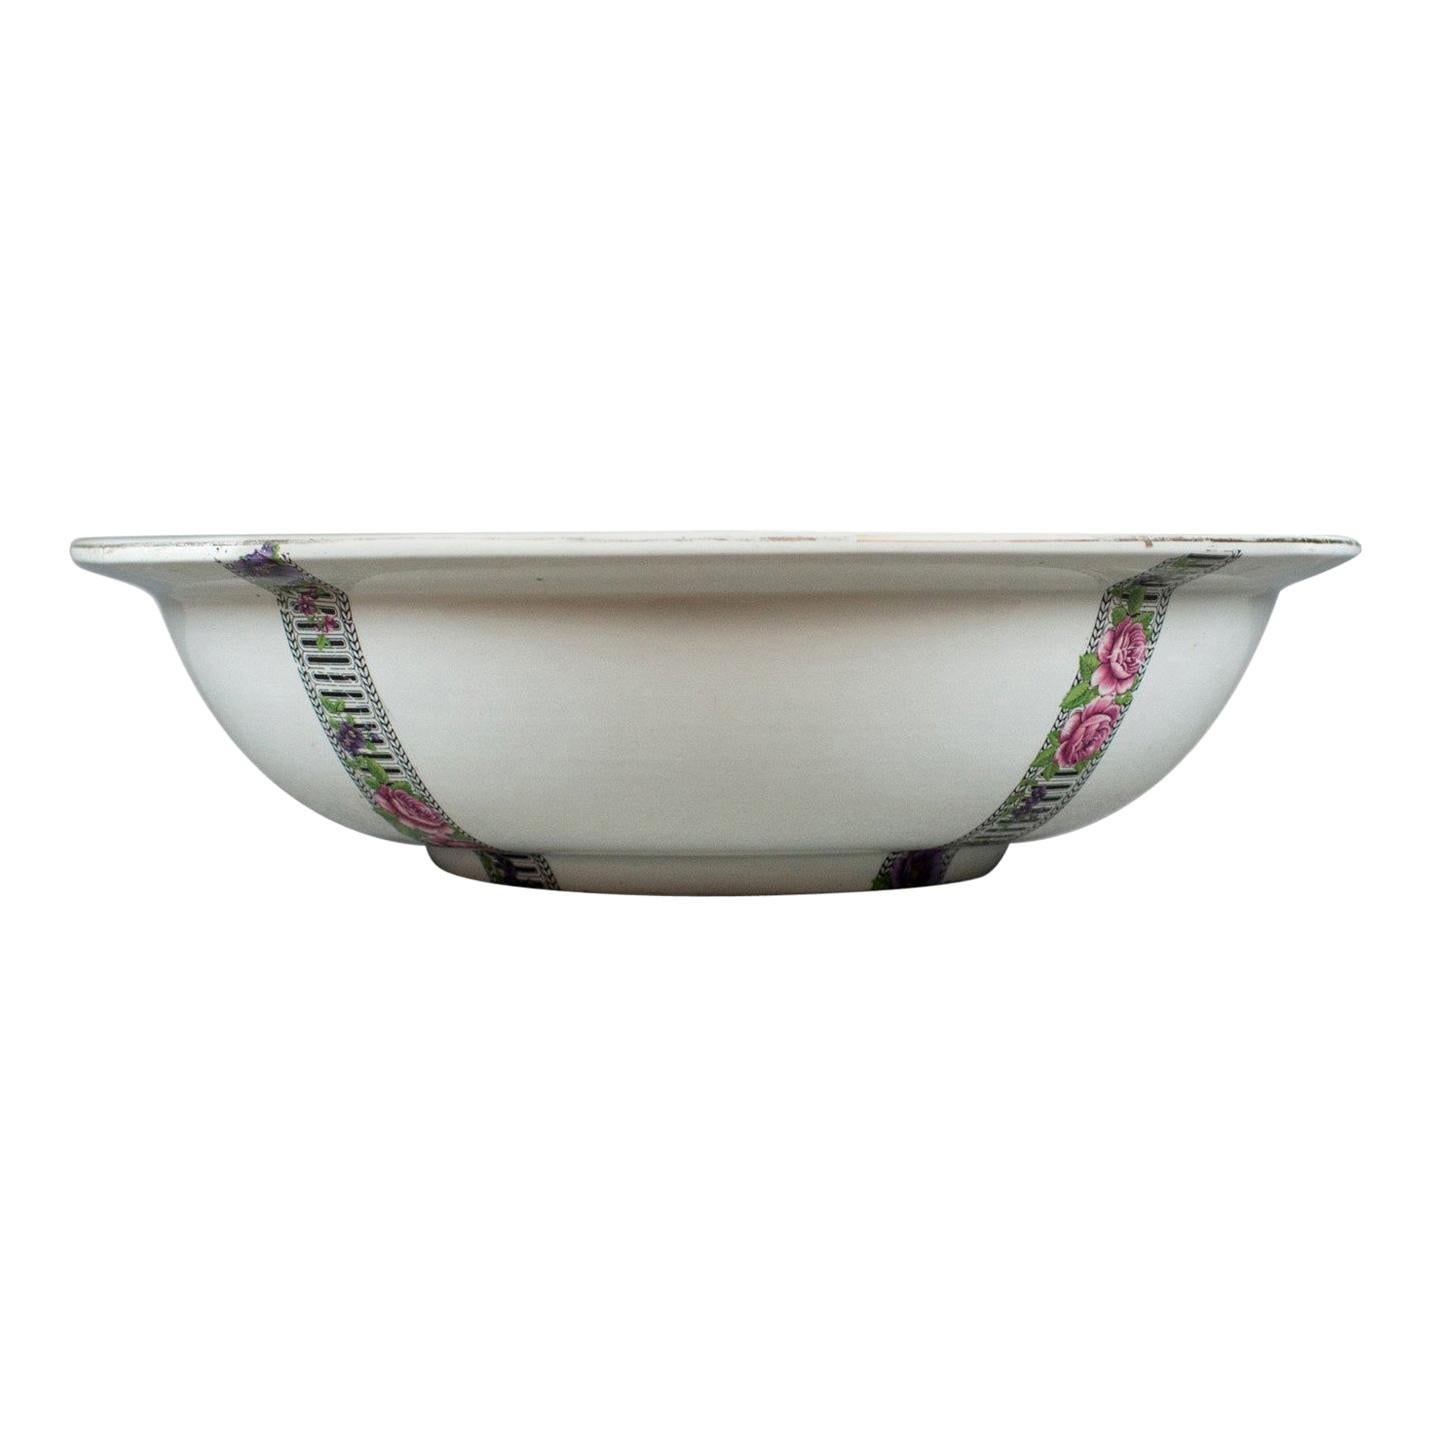 Large Vintage Fruit Bowl, Ceramic Basin, White, Decorative, Floral Bands